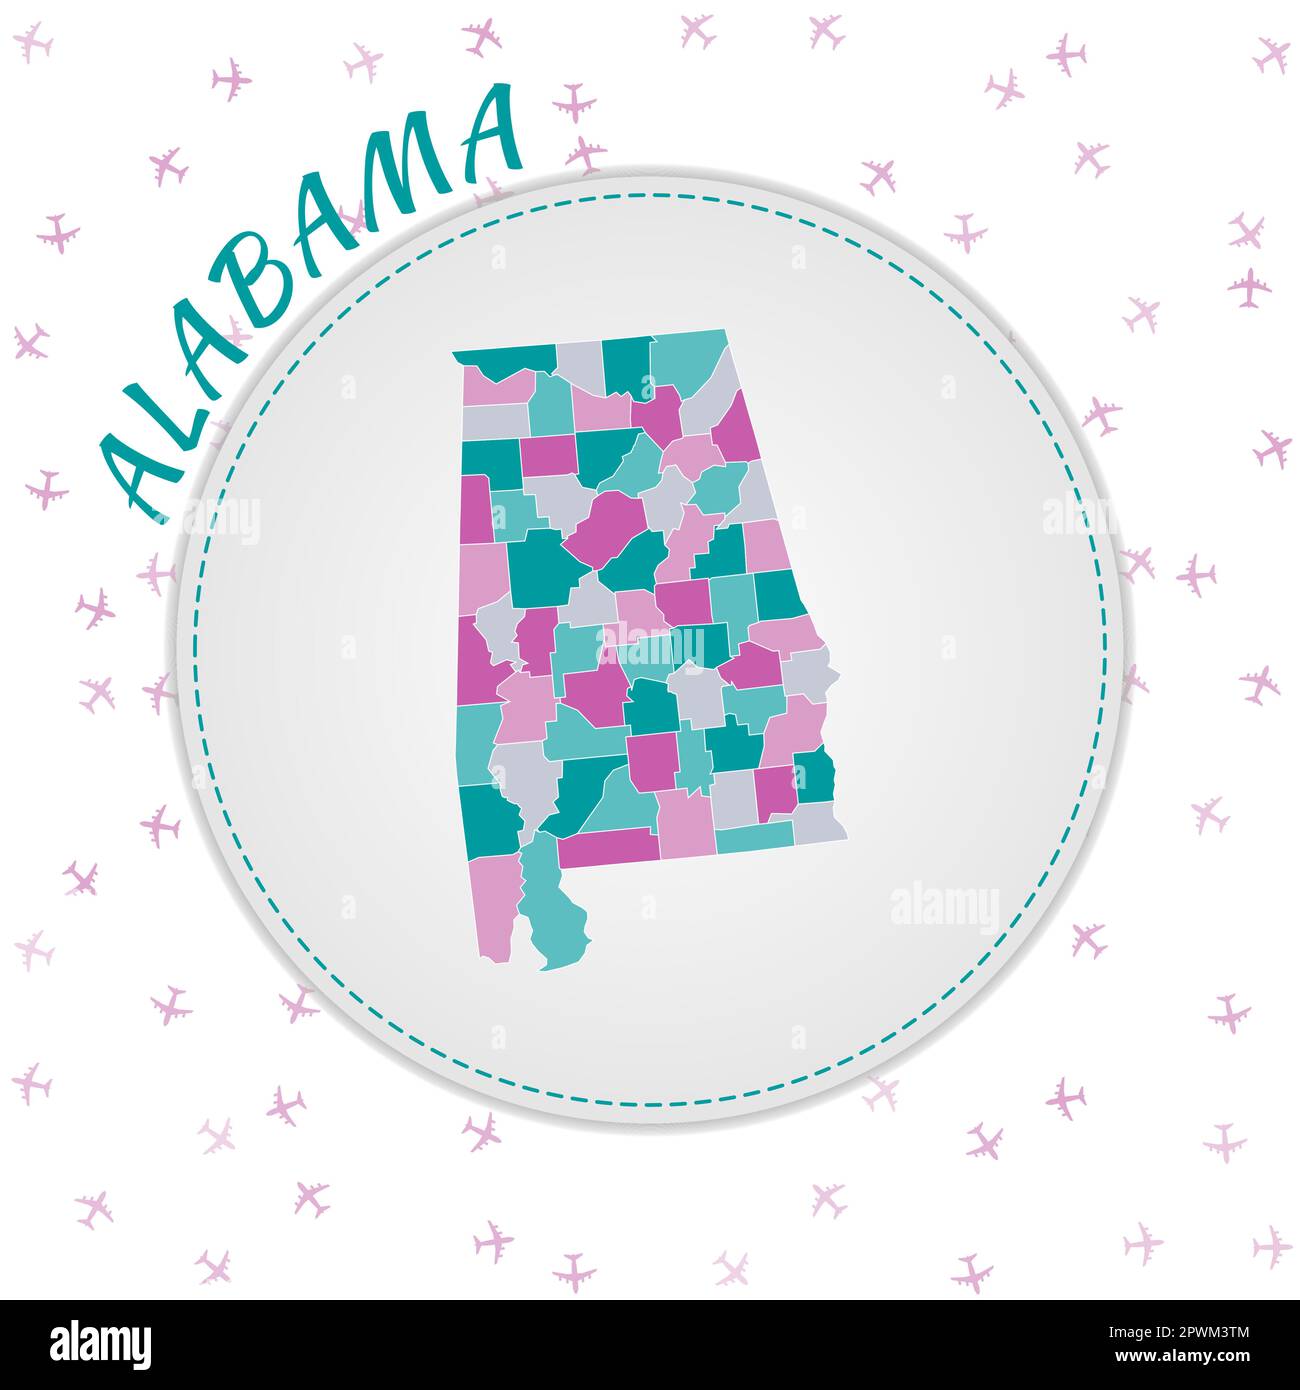 Motif plan Alabama. Carte de l'état US avec les régions dans la palette de couleurs émeraude-améthyste. Voyage arrondi à l'affiche Alabama avec nous nom d'état et airpla Illustration de Vecteur